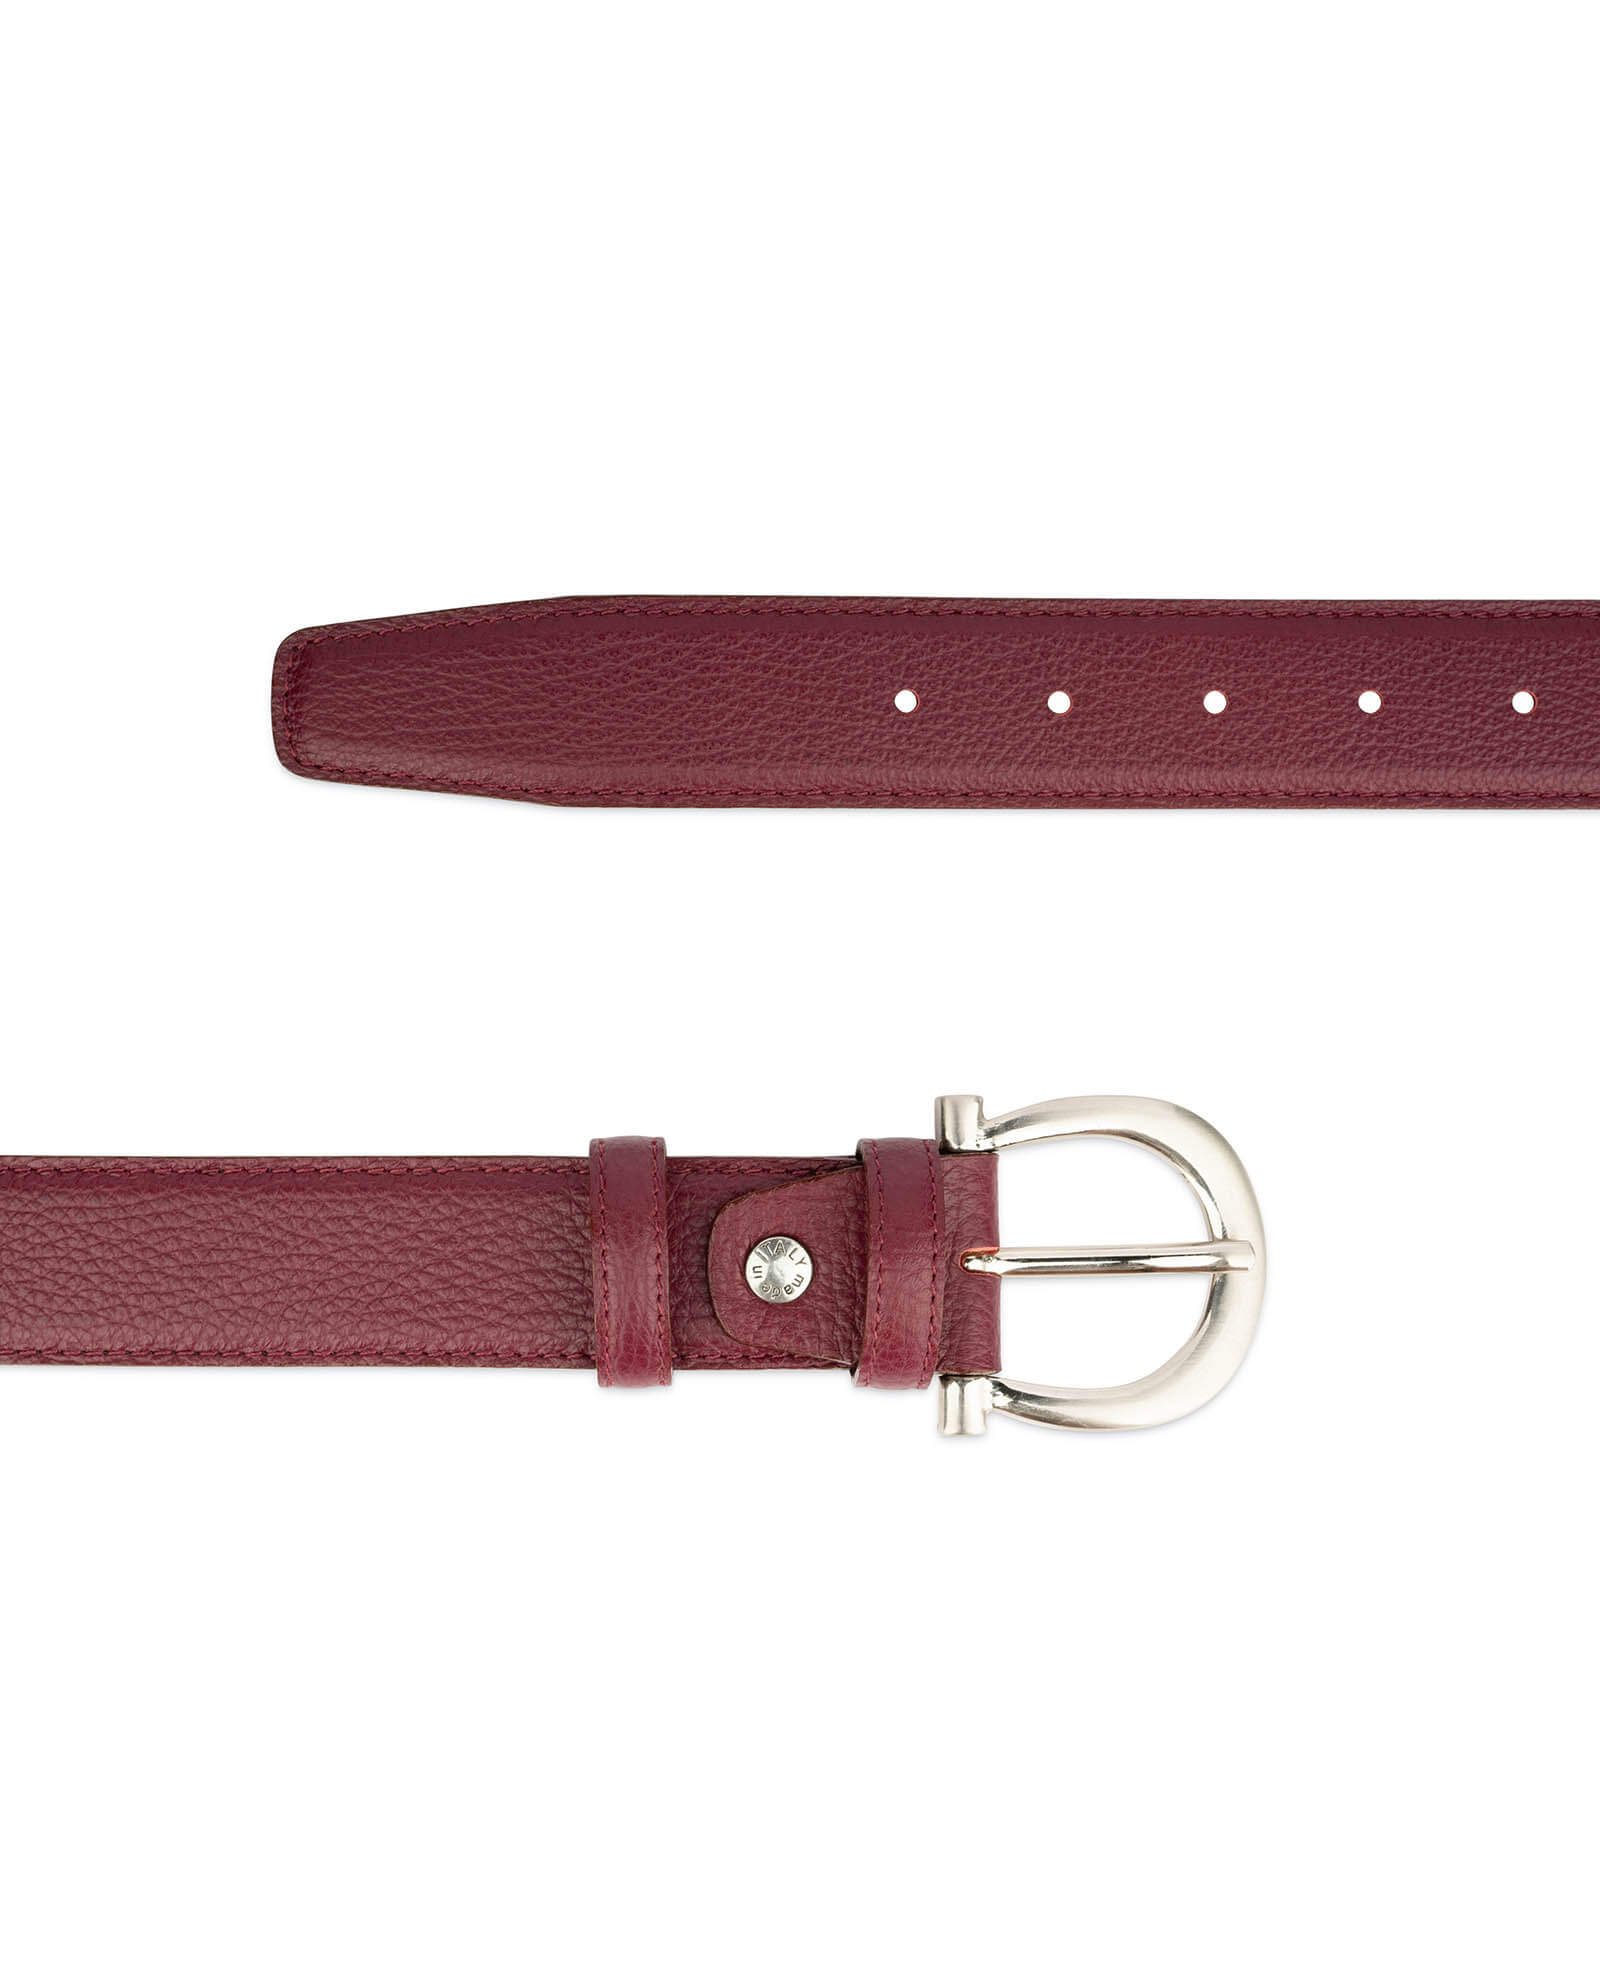 Buy Womens Burgundy Belt With Italian Buckle | LeatherBeltsOnline